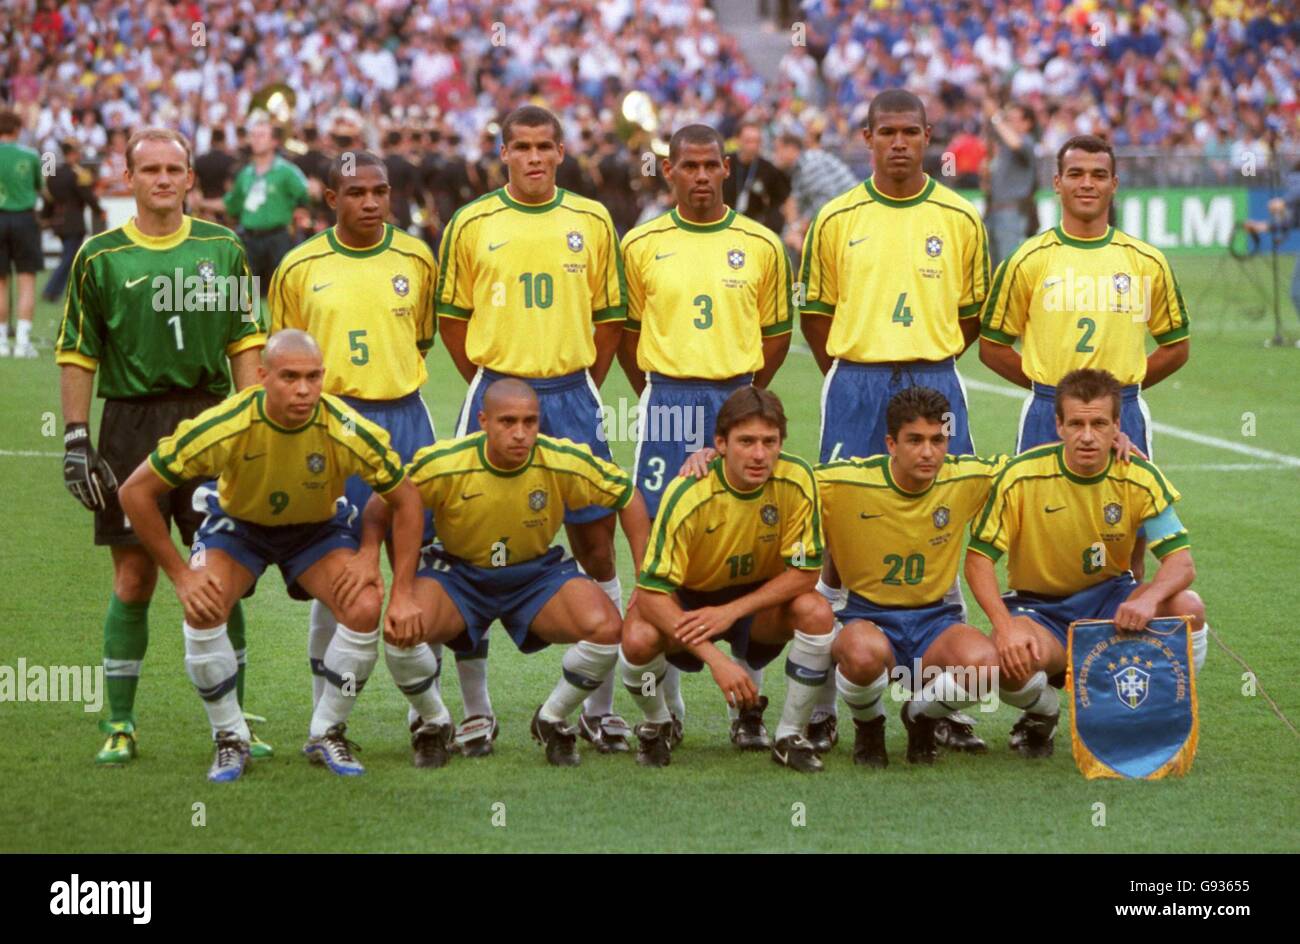 https://c8.alamy.com/comp/G93655/soccer-world-cup-france-98-final-brazil-v-france-brazil-team-group-G93655.jpg